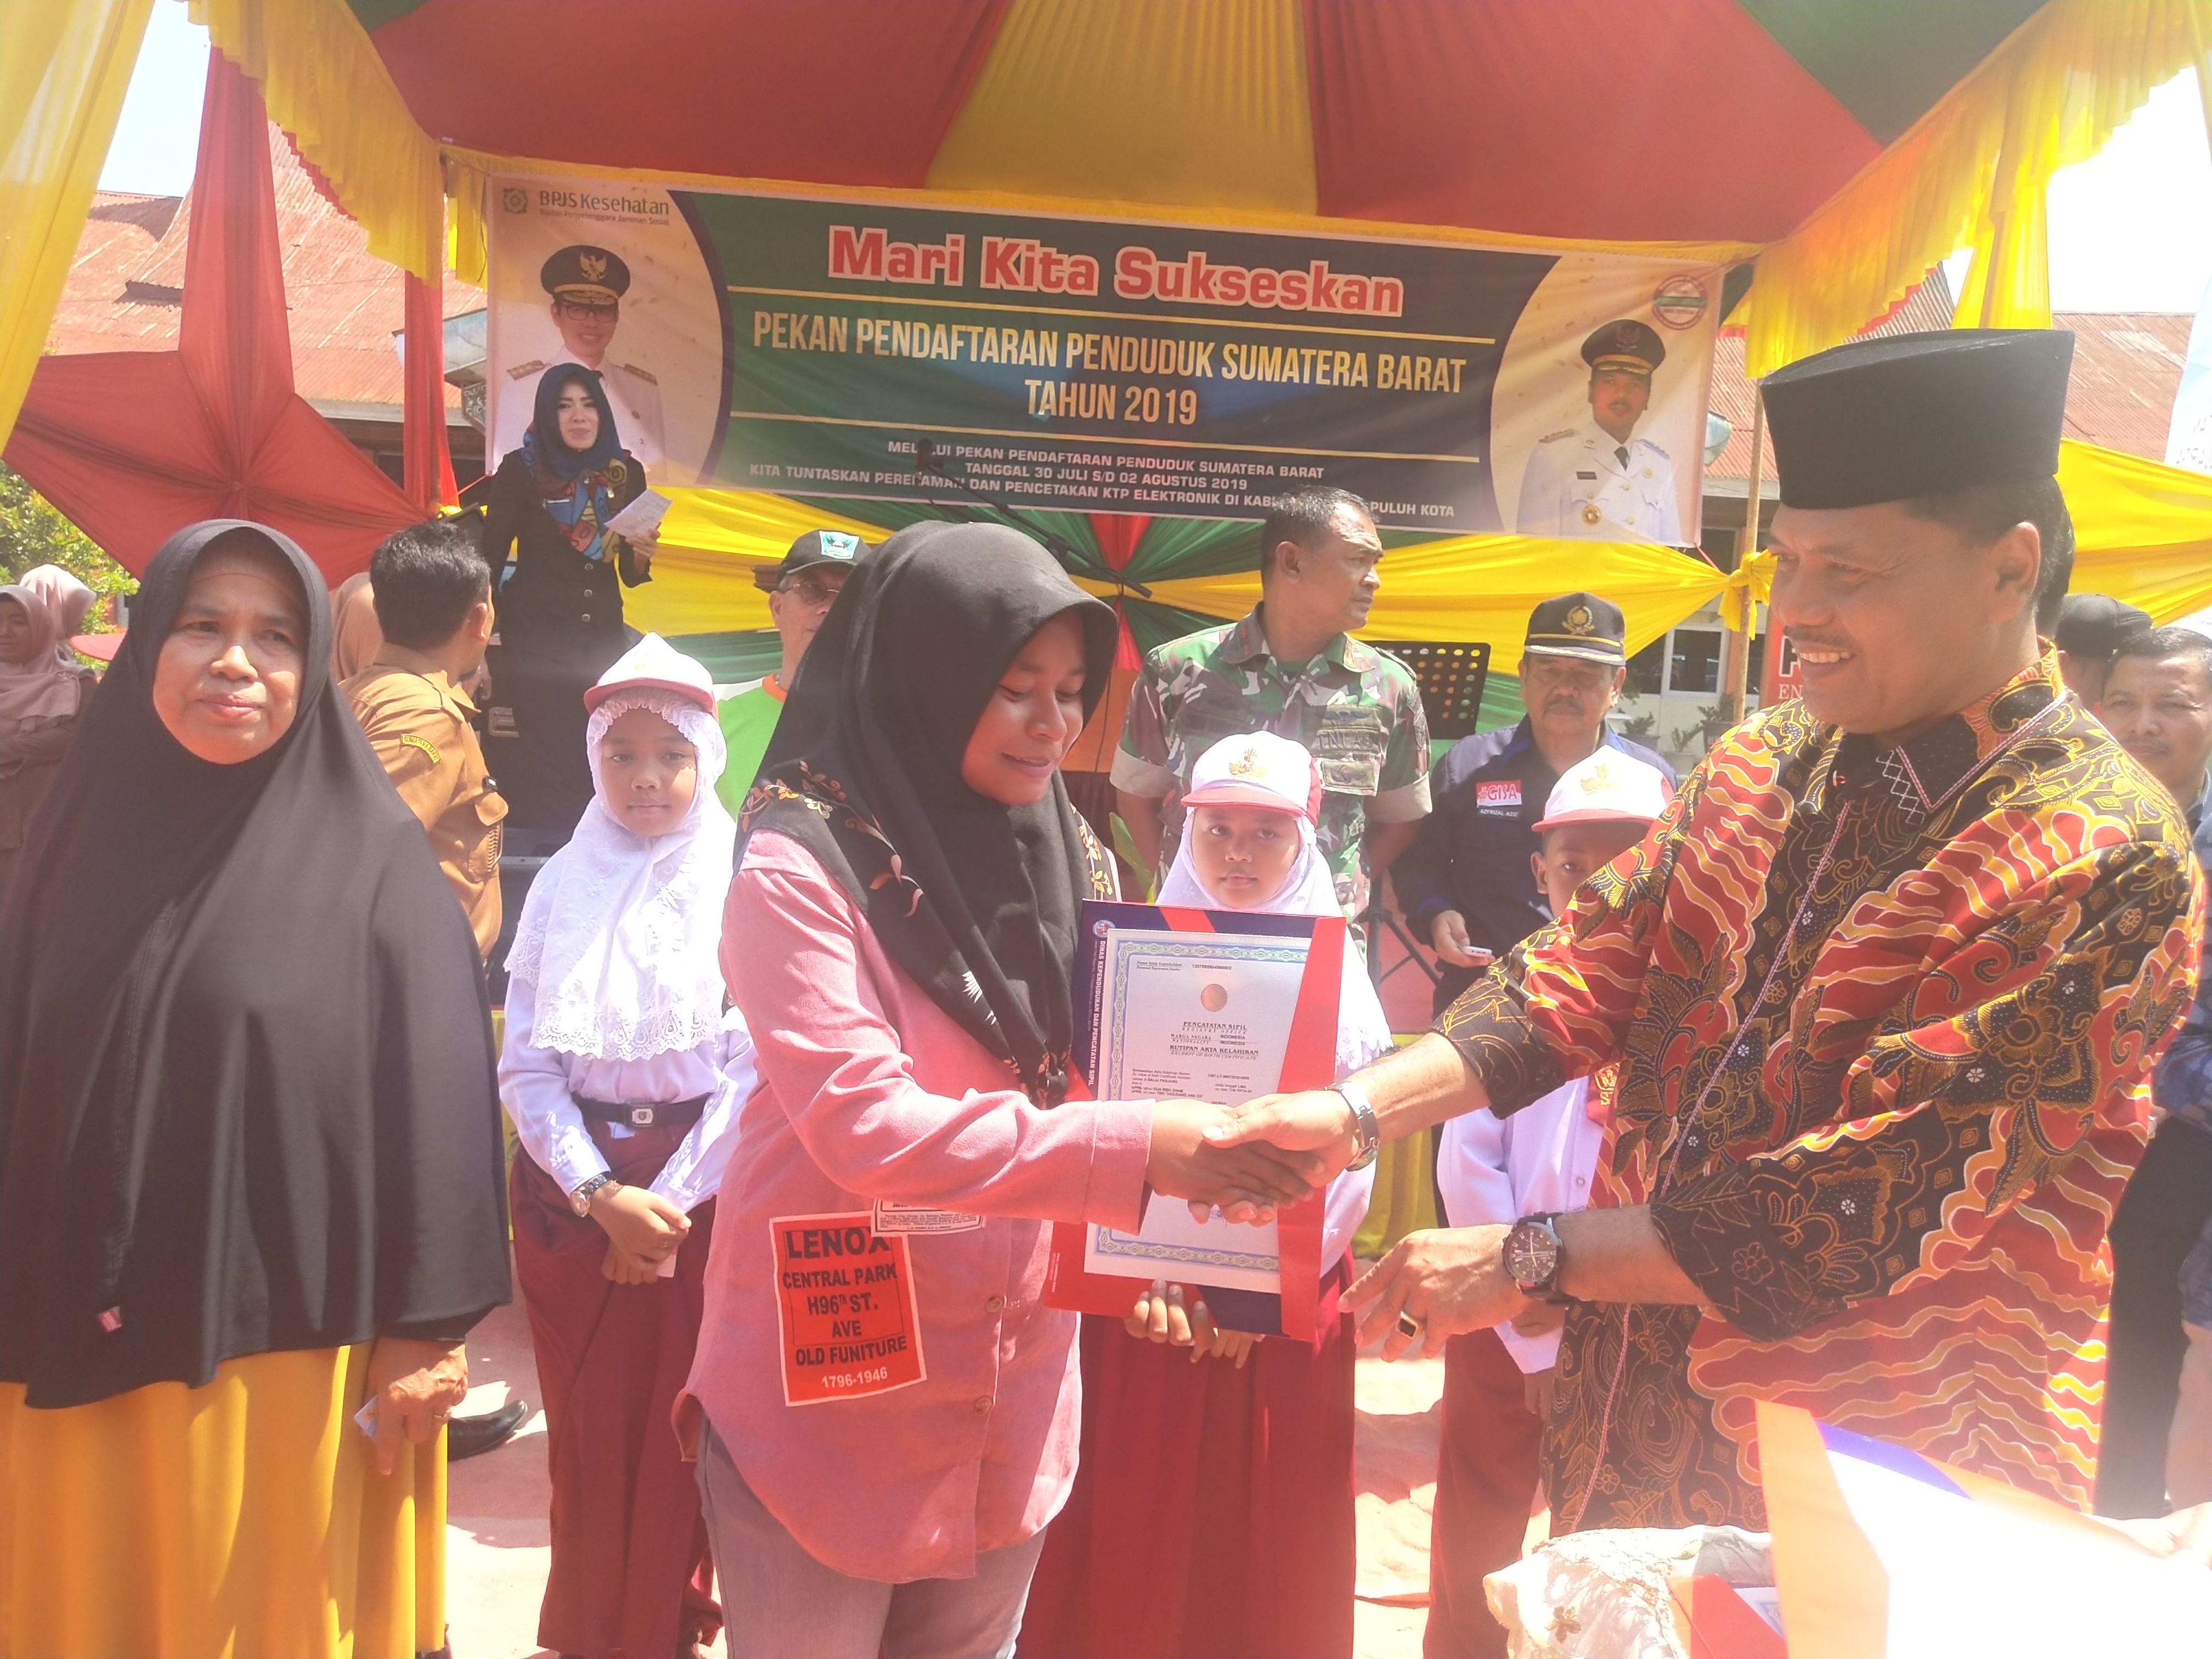 Pekan Pendaftaran Penduduk Sumatera Barat Dipusatkan di Limapuluh Kota